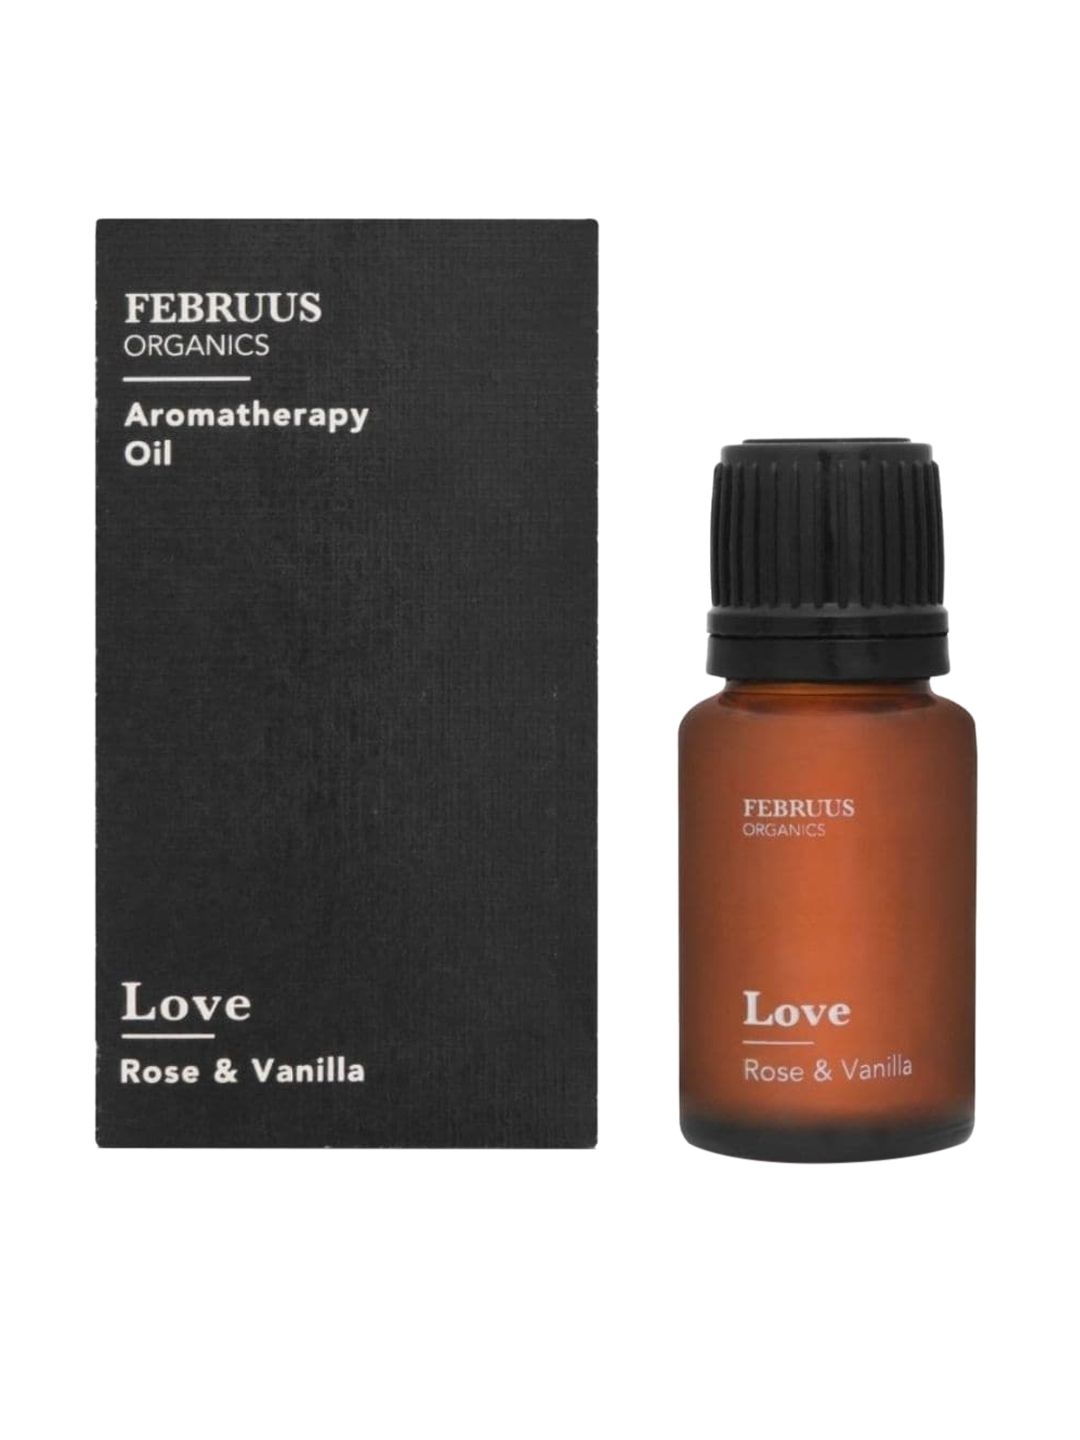 Februus Organics Love Aromathreapy Oil 10ml Price in India